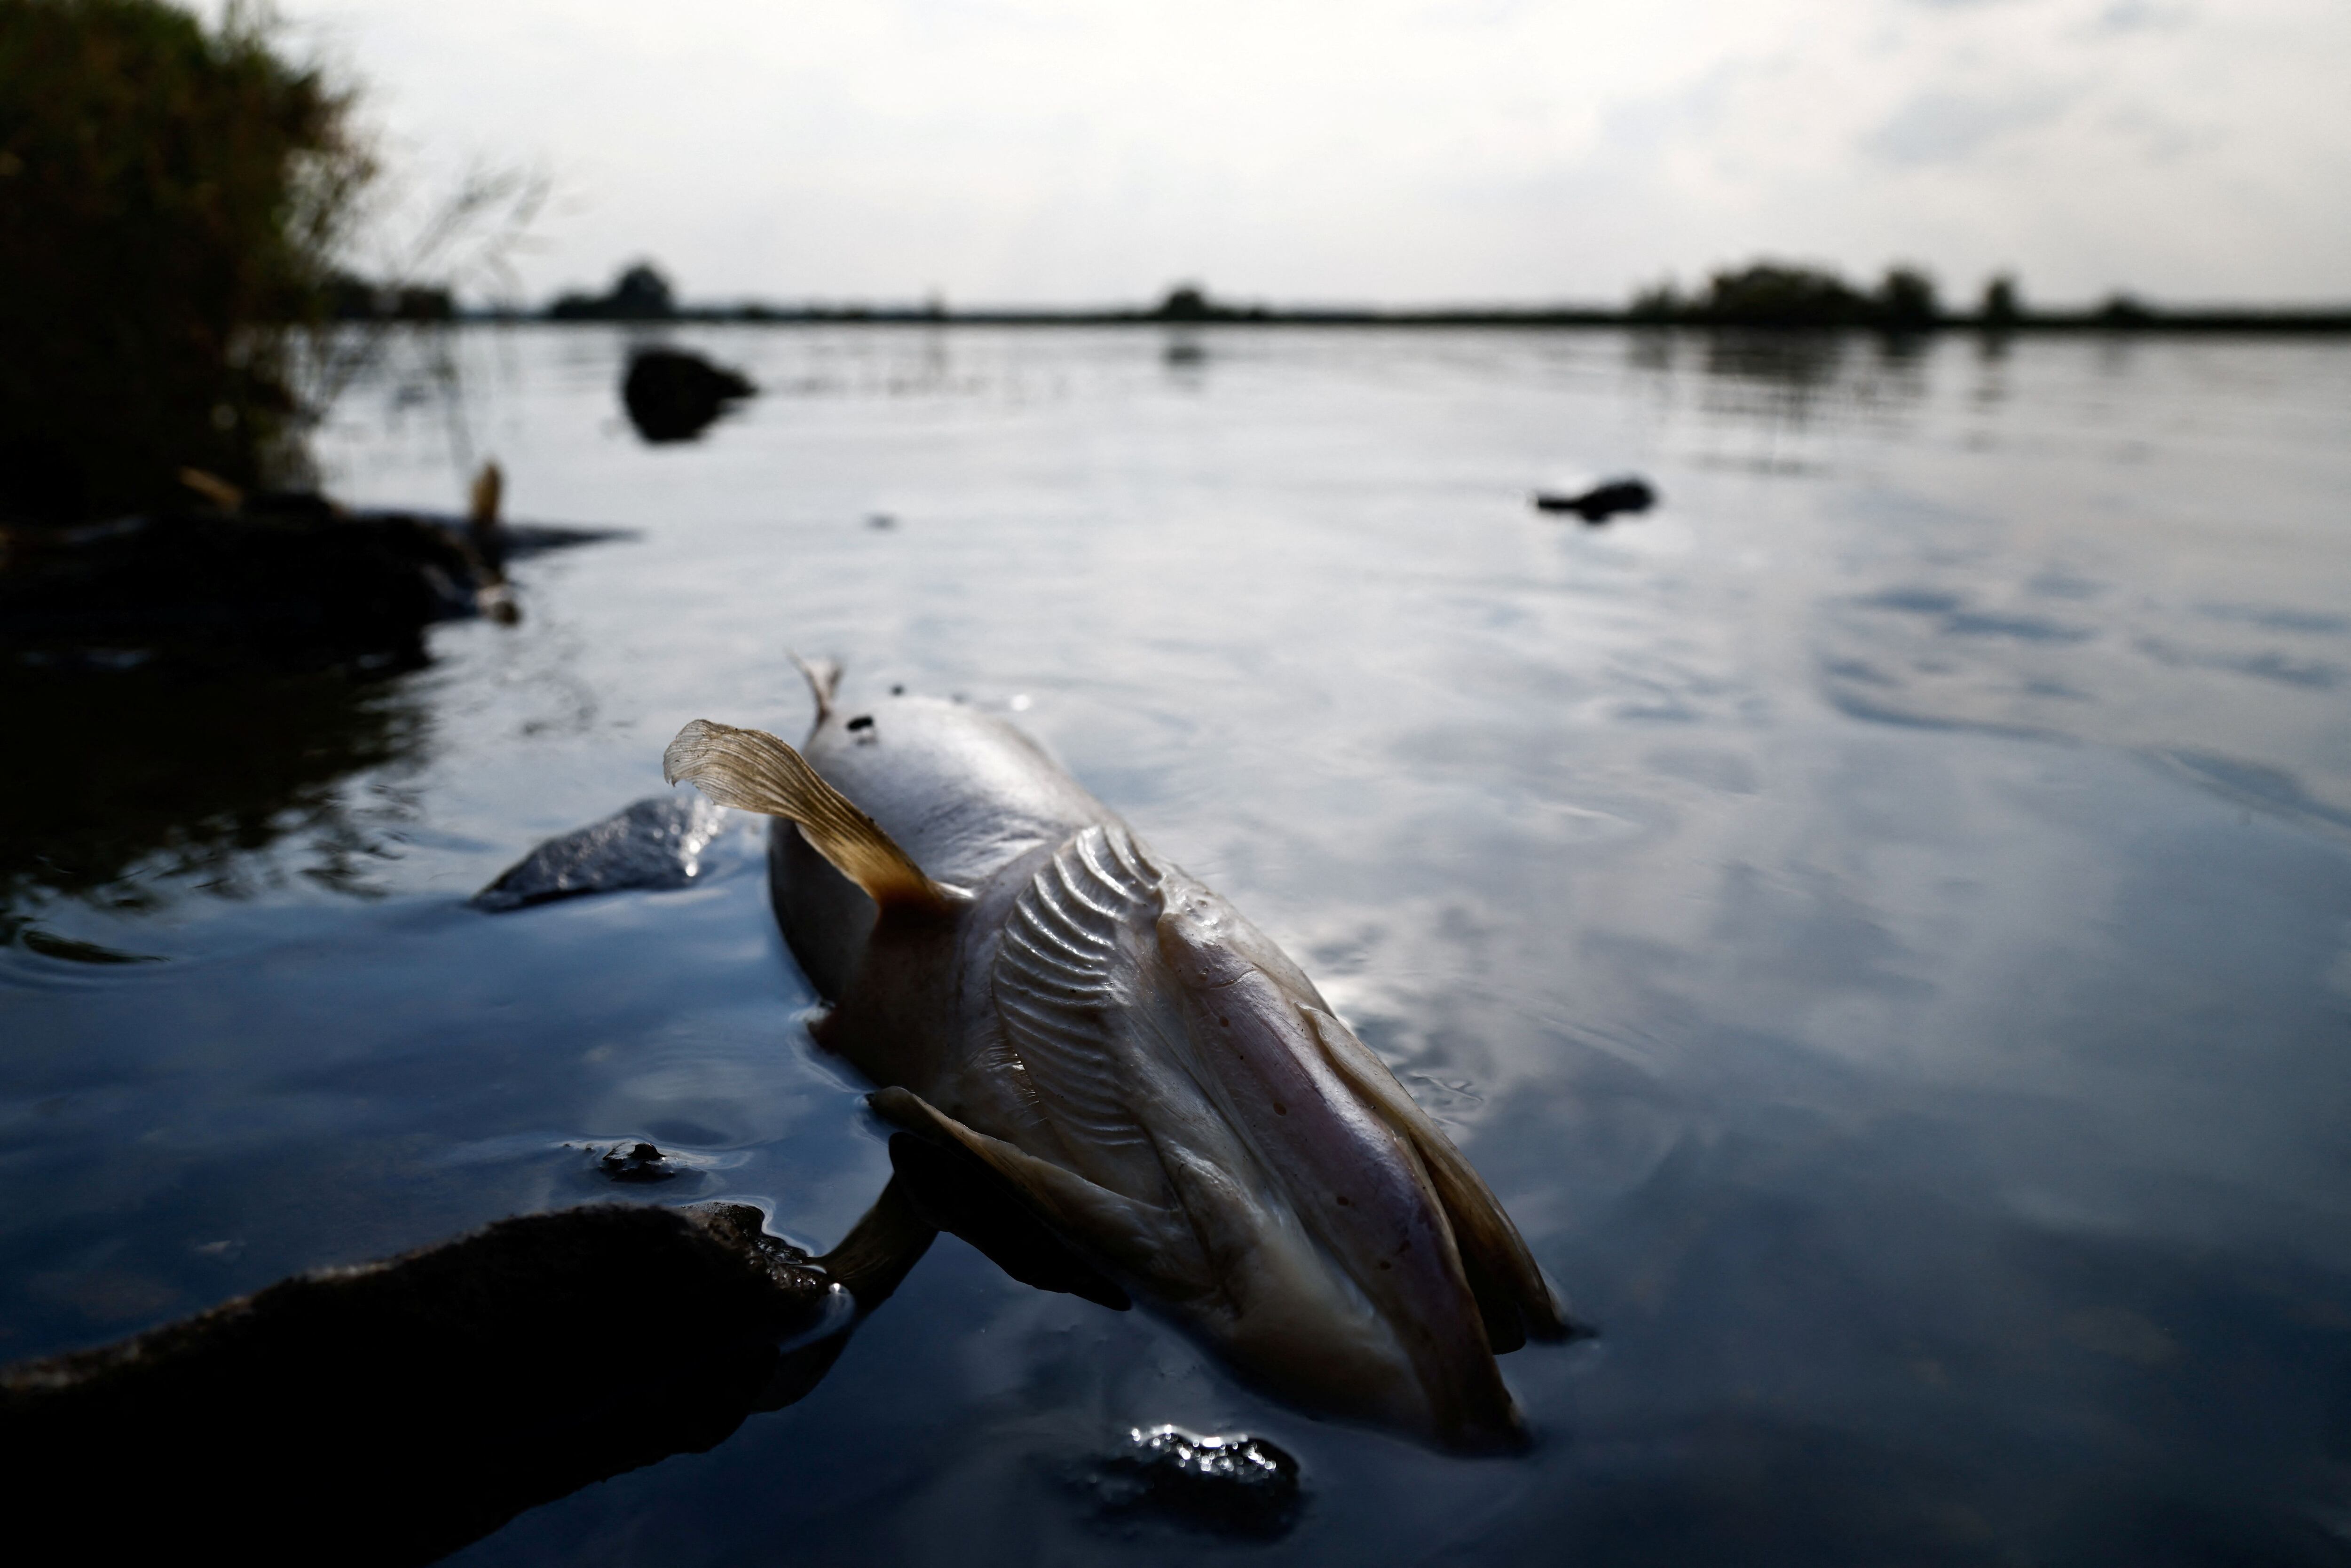 Uważa się, że zanieczyszczenie wody było przyczyną masowego wymierania ryb we wsi Widuchów w Polsce w dniu 17 sierpnia 2022 r.  REUTERS/Kuba Steżycki/File